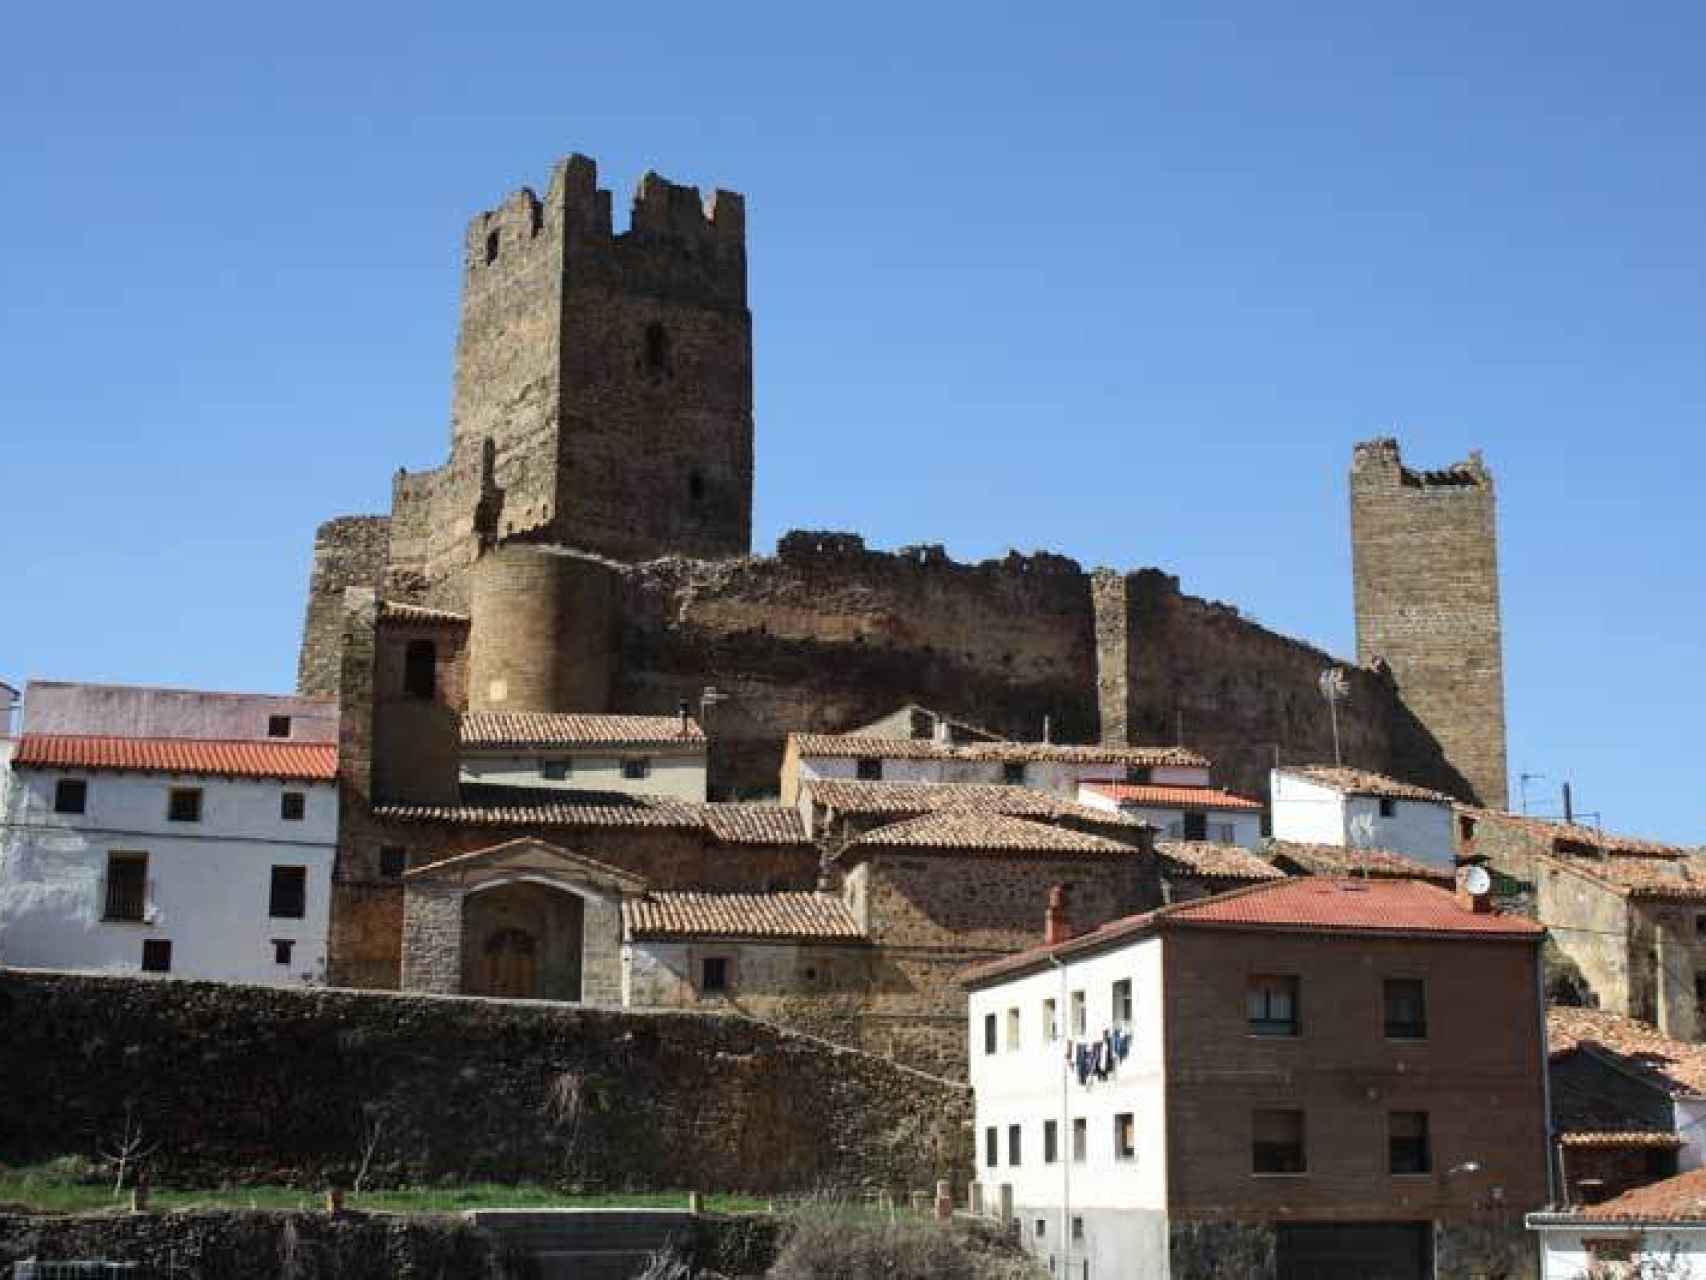 El castillo sobre el pequeño pueblo de Vozmediano.